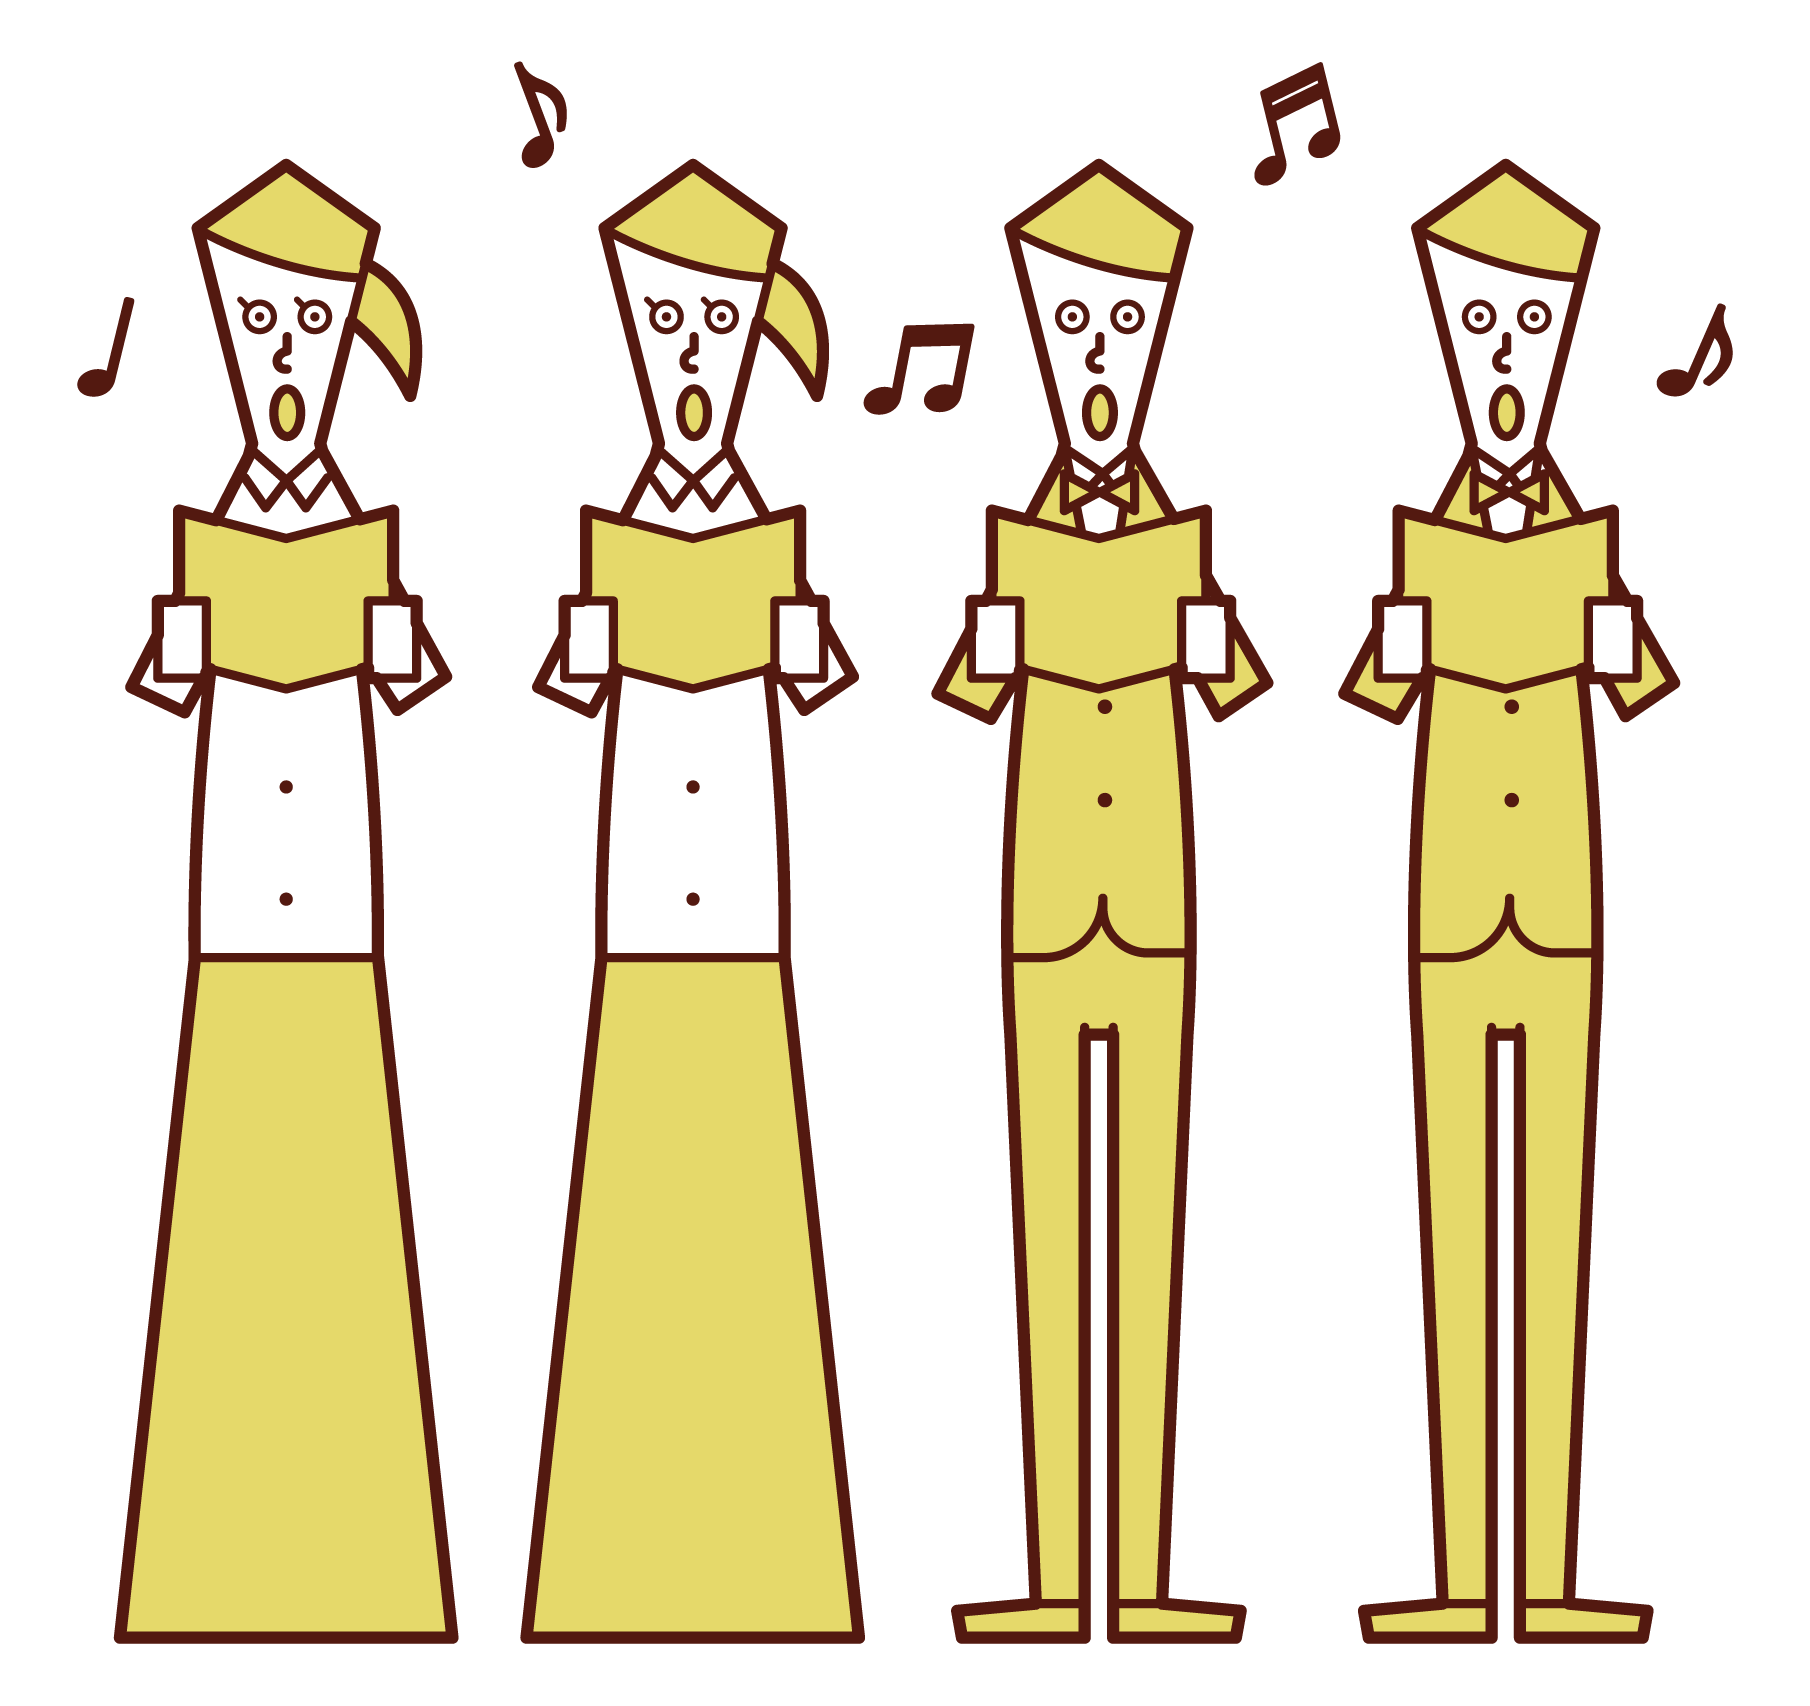 オーケストラの合唱団のイラスト